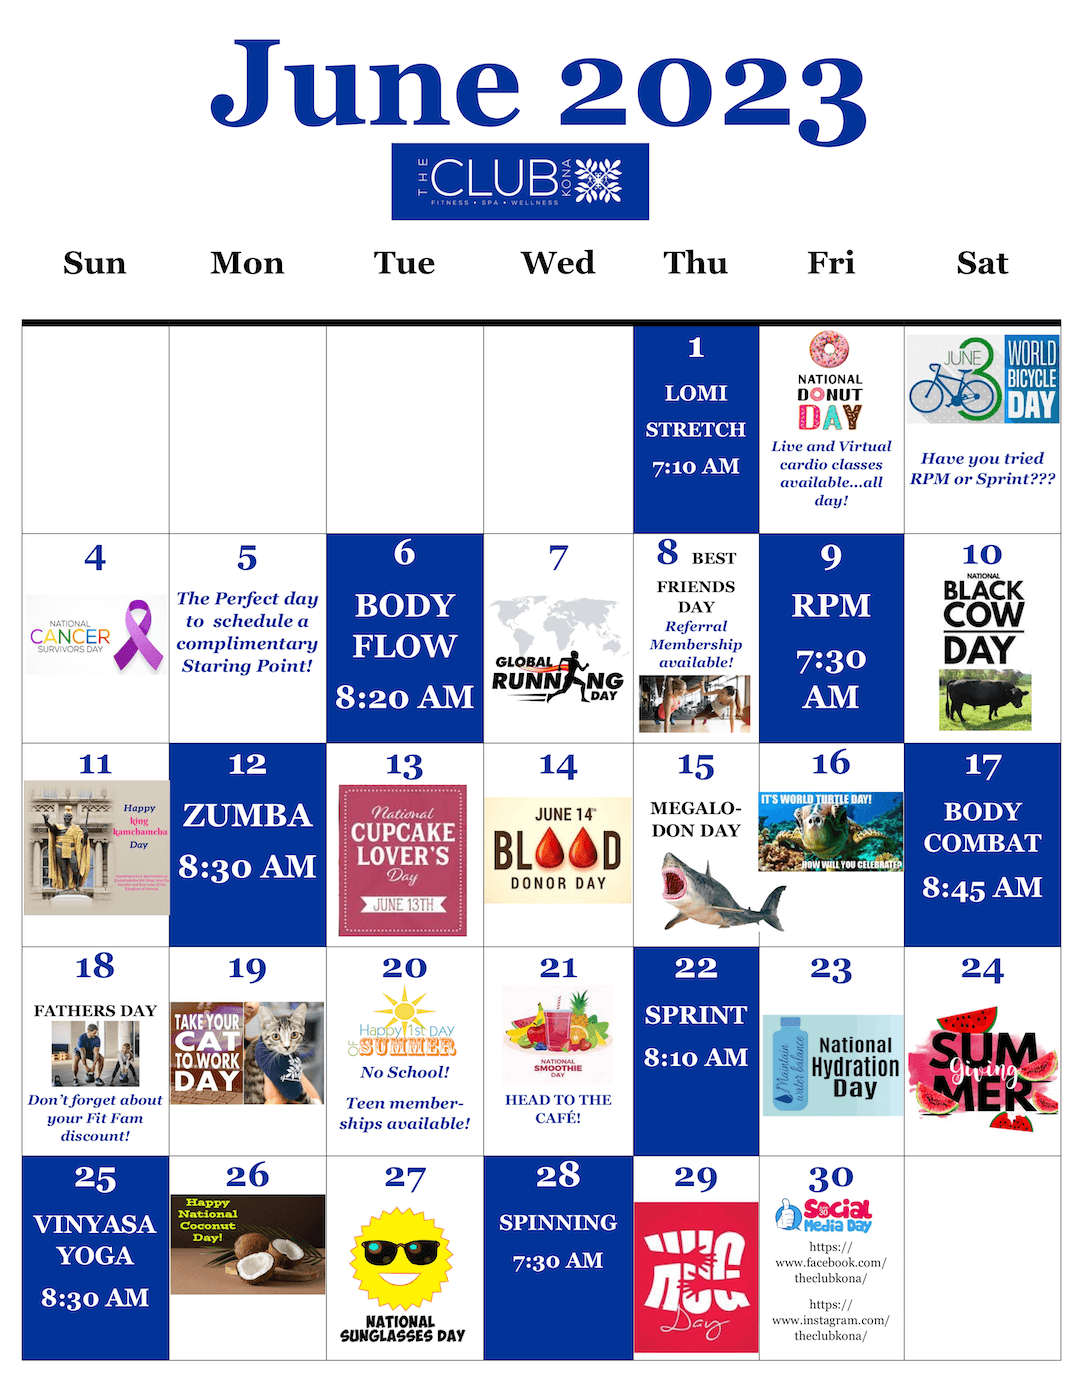 The Club Kona - June 2023 Fun Calendar